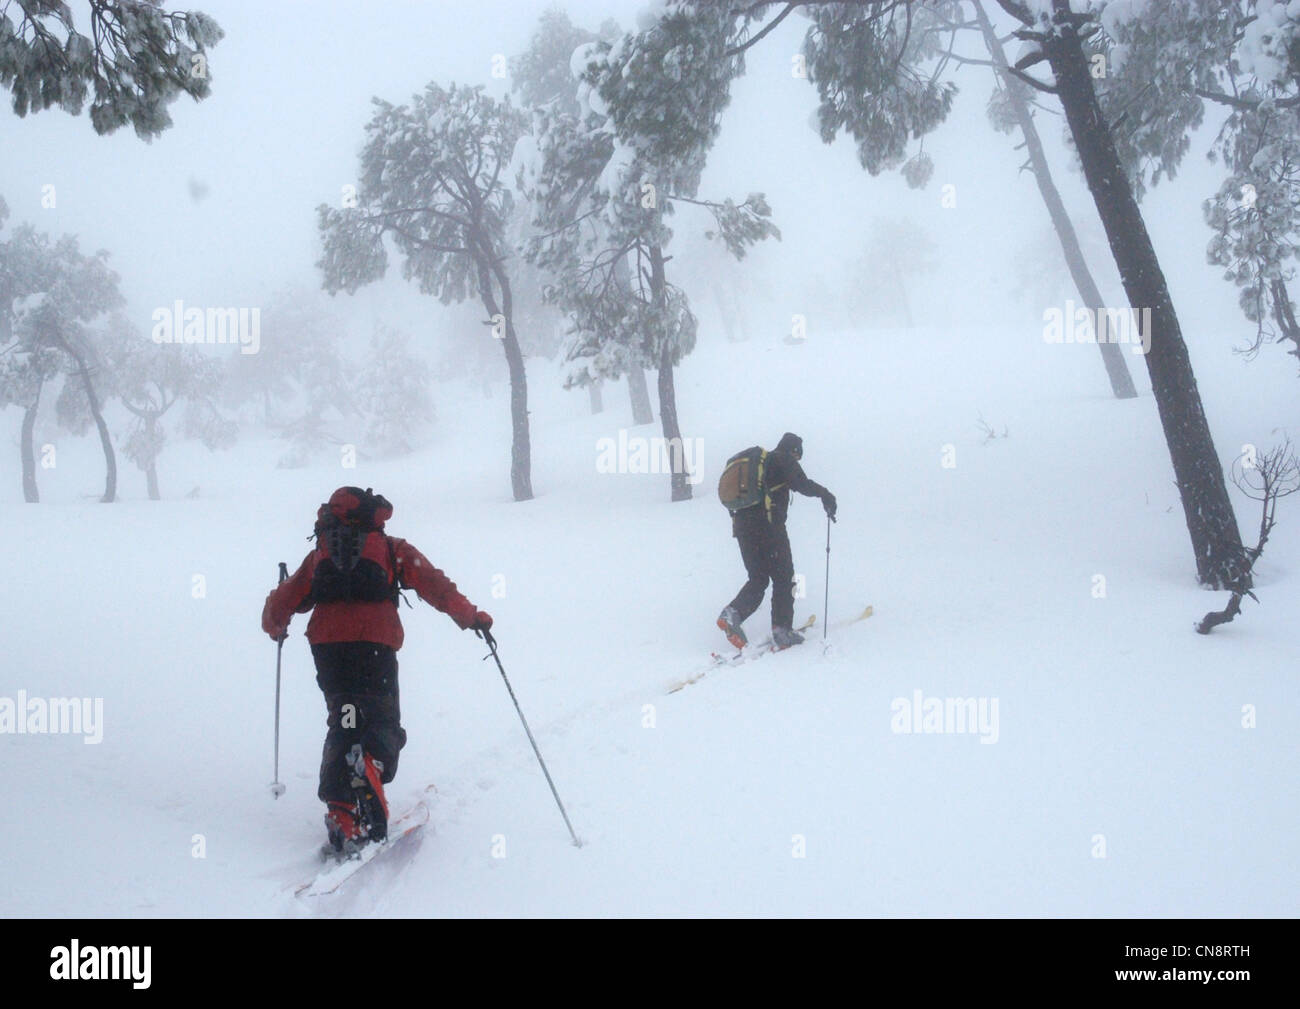 Il Libano, Monte Libano, Qornayel, sciatori nella foresta di pini durante una nevicata Foto Stock